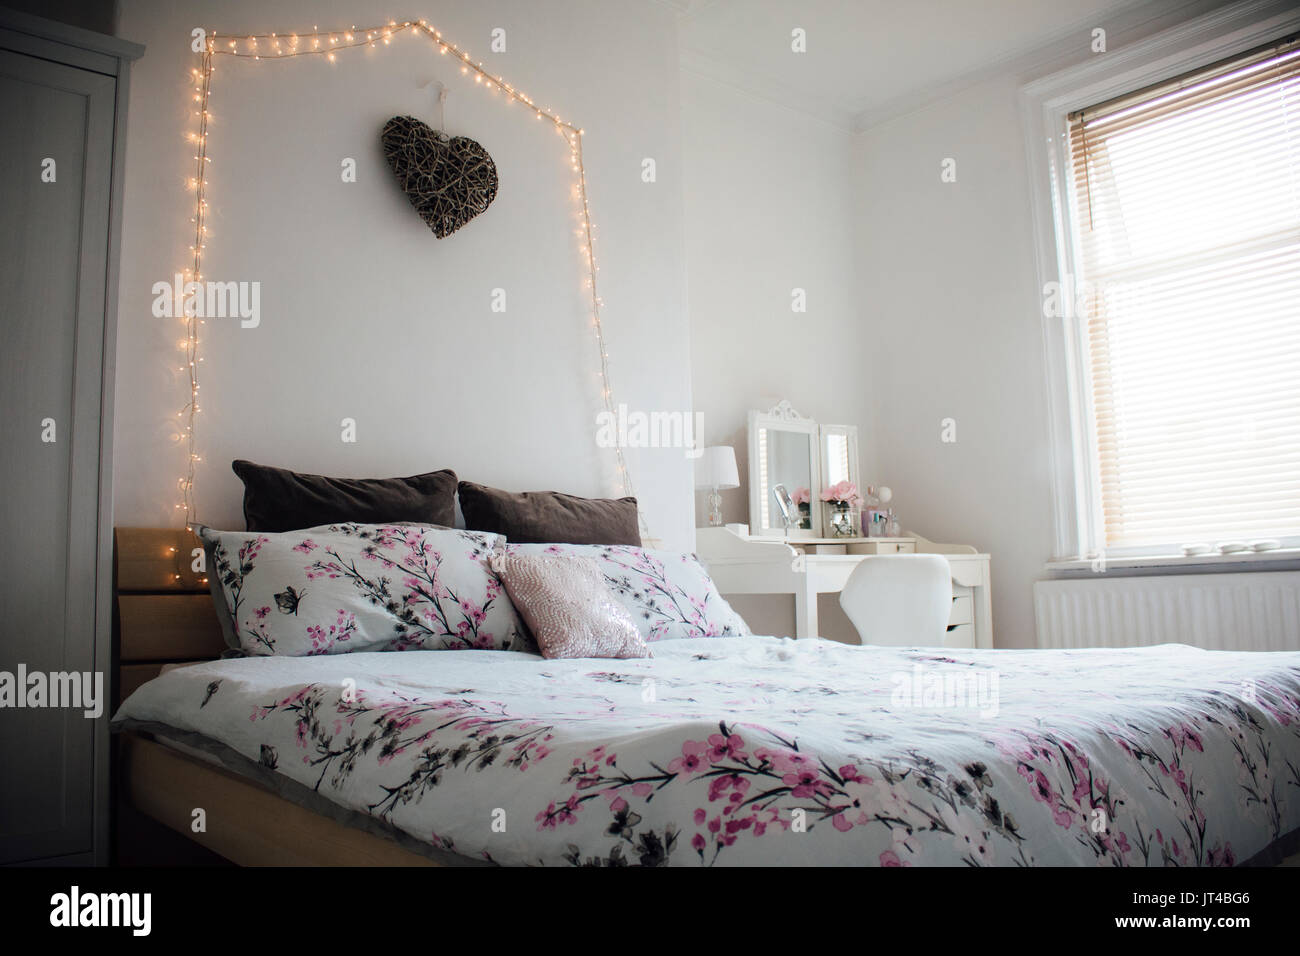 Horizontal image of a teenage girl's bedroom. Stock Photo